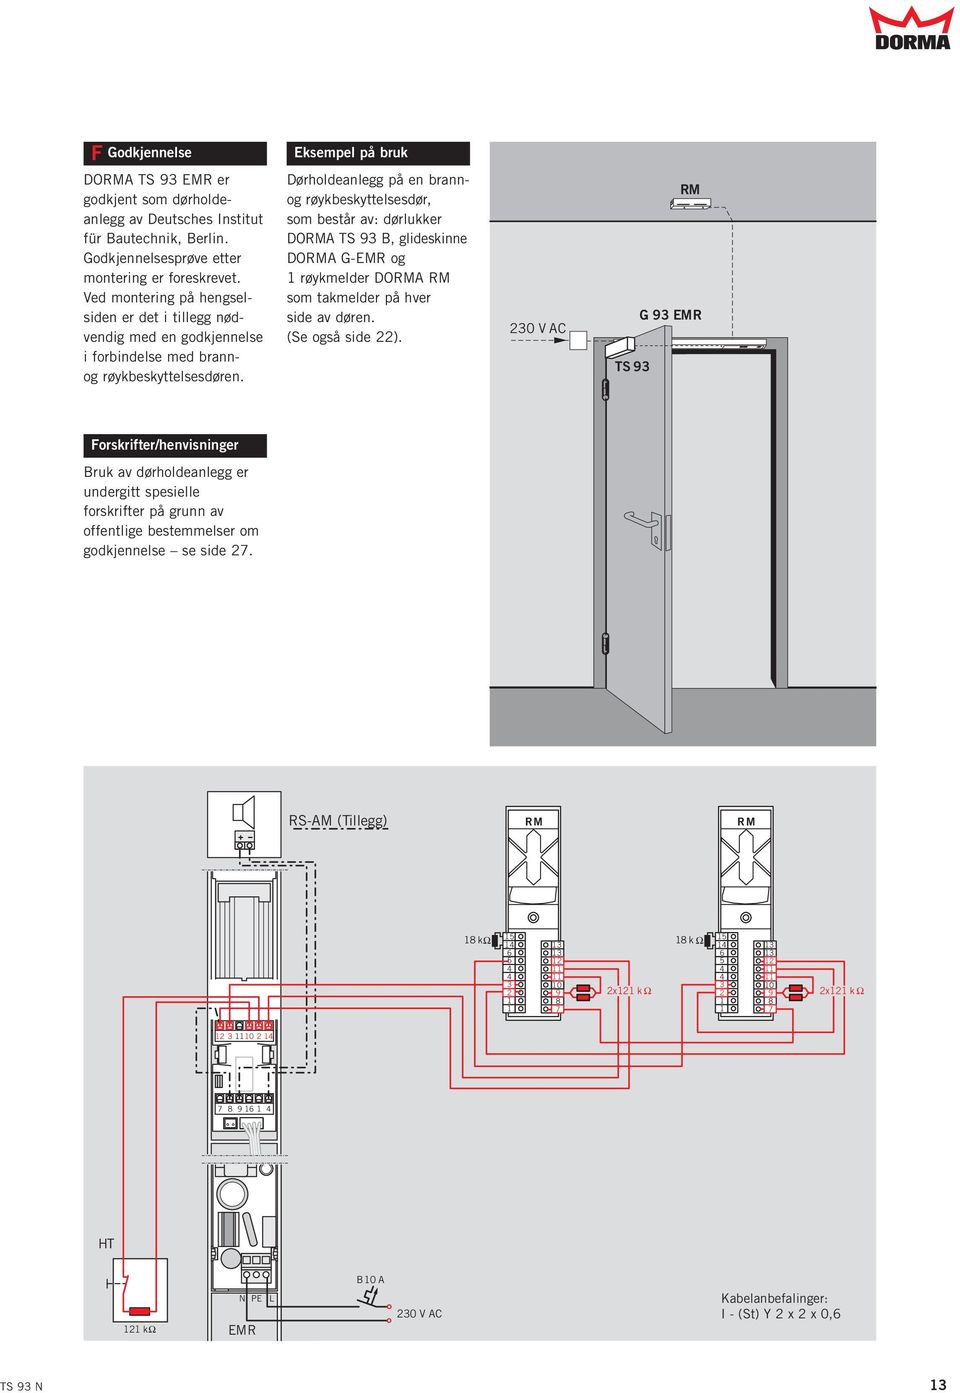 Dørholdeanlegg på en brannog røykbeskyttelsesdør, som består av: dørlukker DORMA TS 93 B, glideskinne DORMA G-EMR og 1 røykmelder DORMA RM som takmelder på hver side av døren. (Se også side 22).